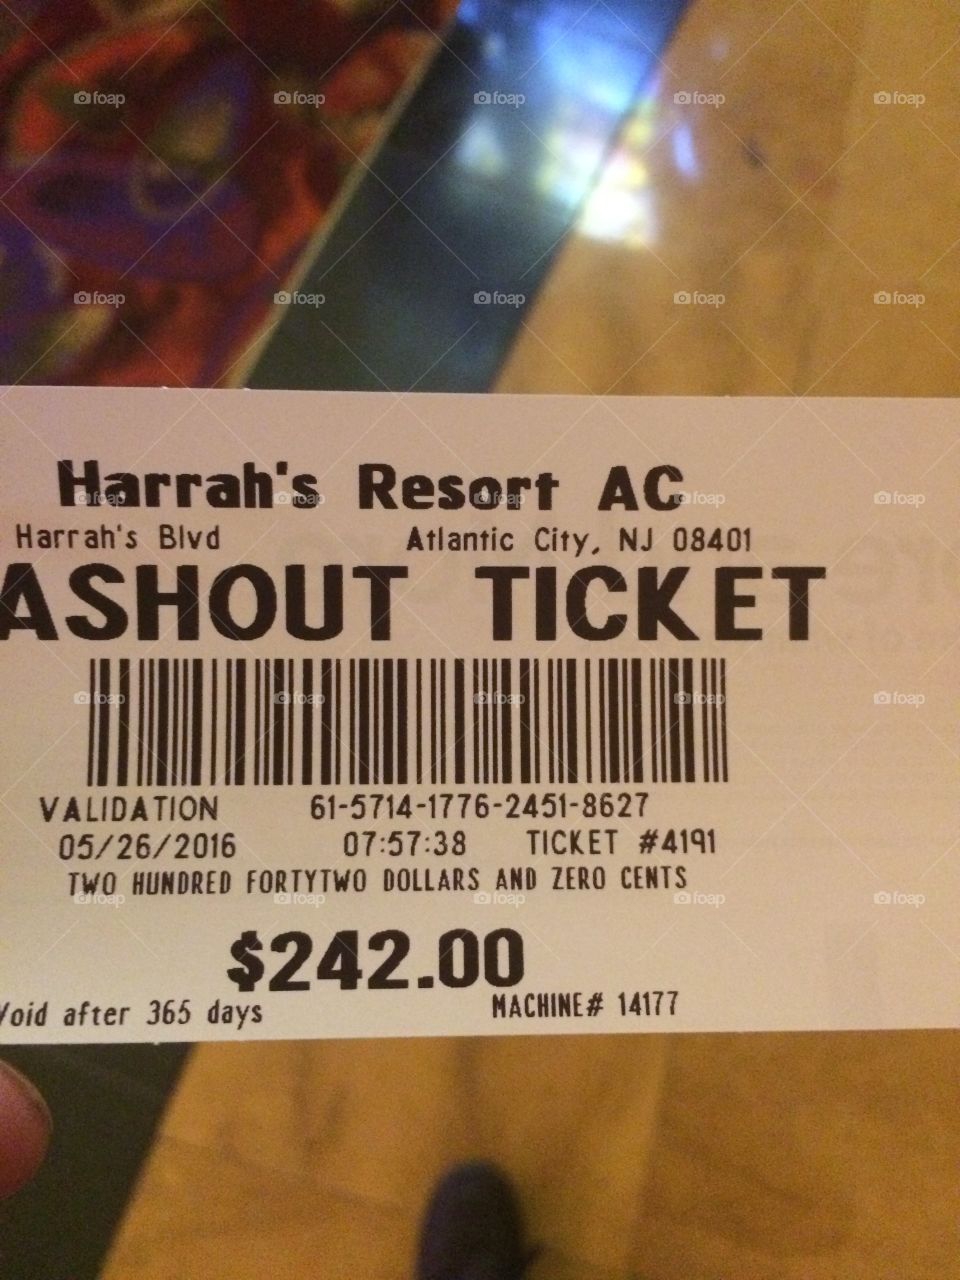 Harrahs Atlantic City cash out ticket 